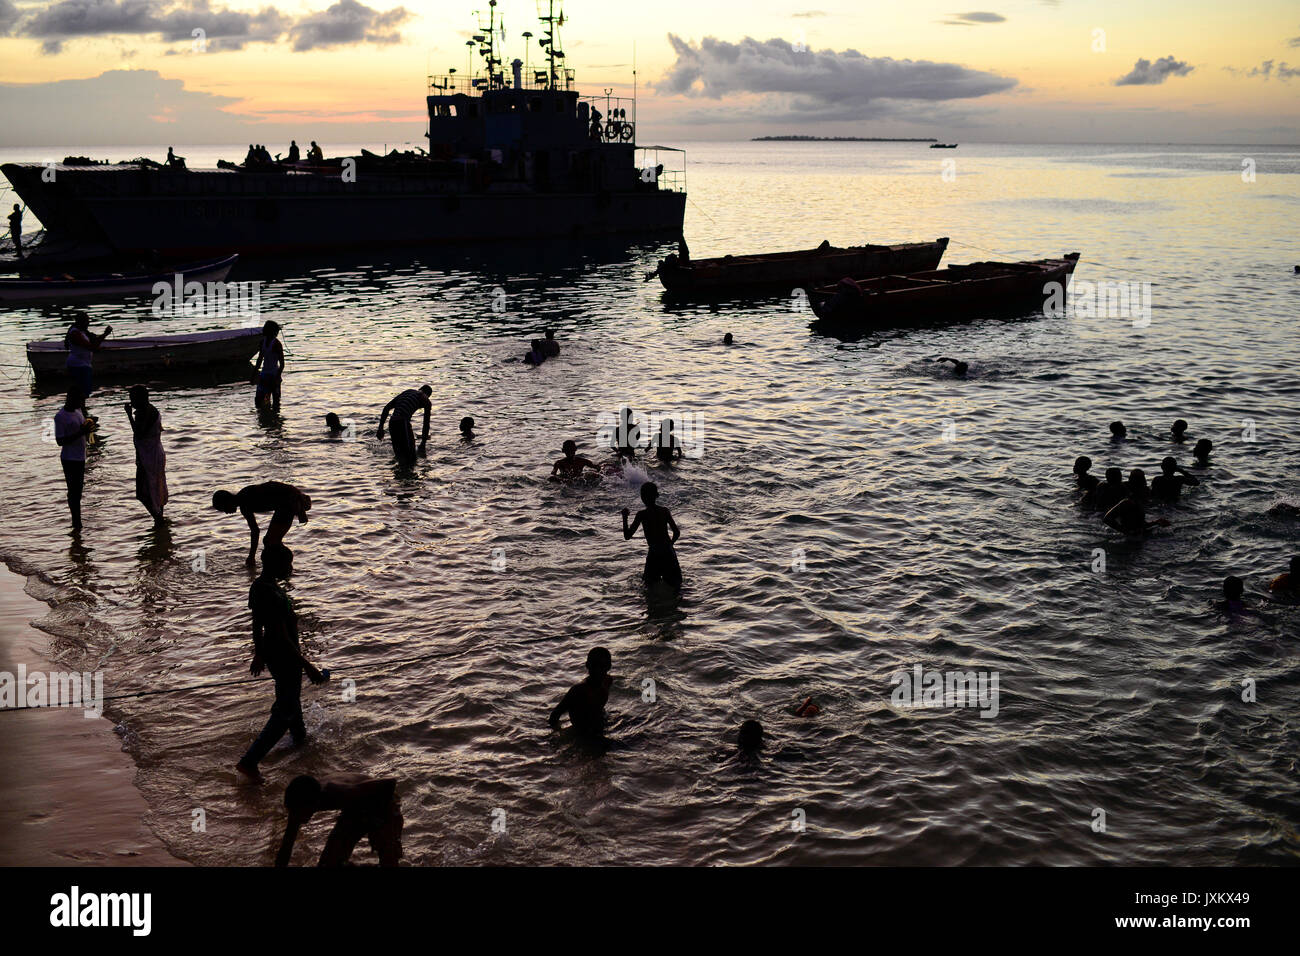 Tanzanie Zanzibar, Stone town, soir en mer, navire de la marine tanzanienne TANZANIE / Insel Sansibar, Stonetown, abends am Meer, Schiff der Marine tansanischen Banque D'Images